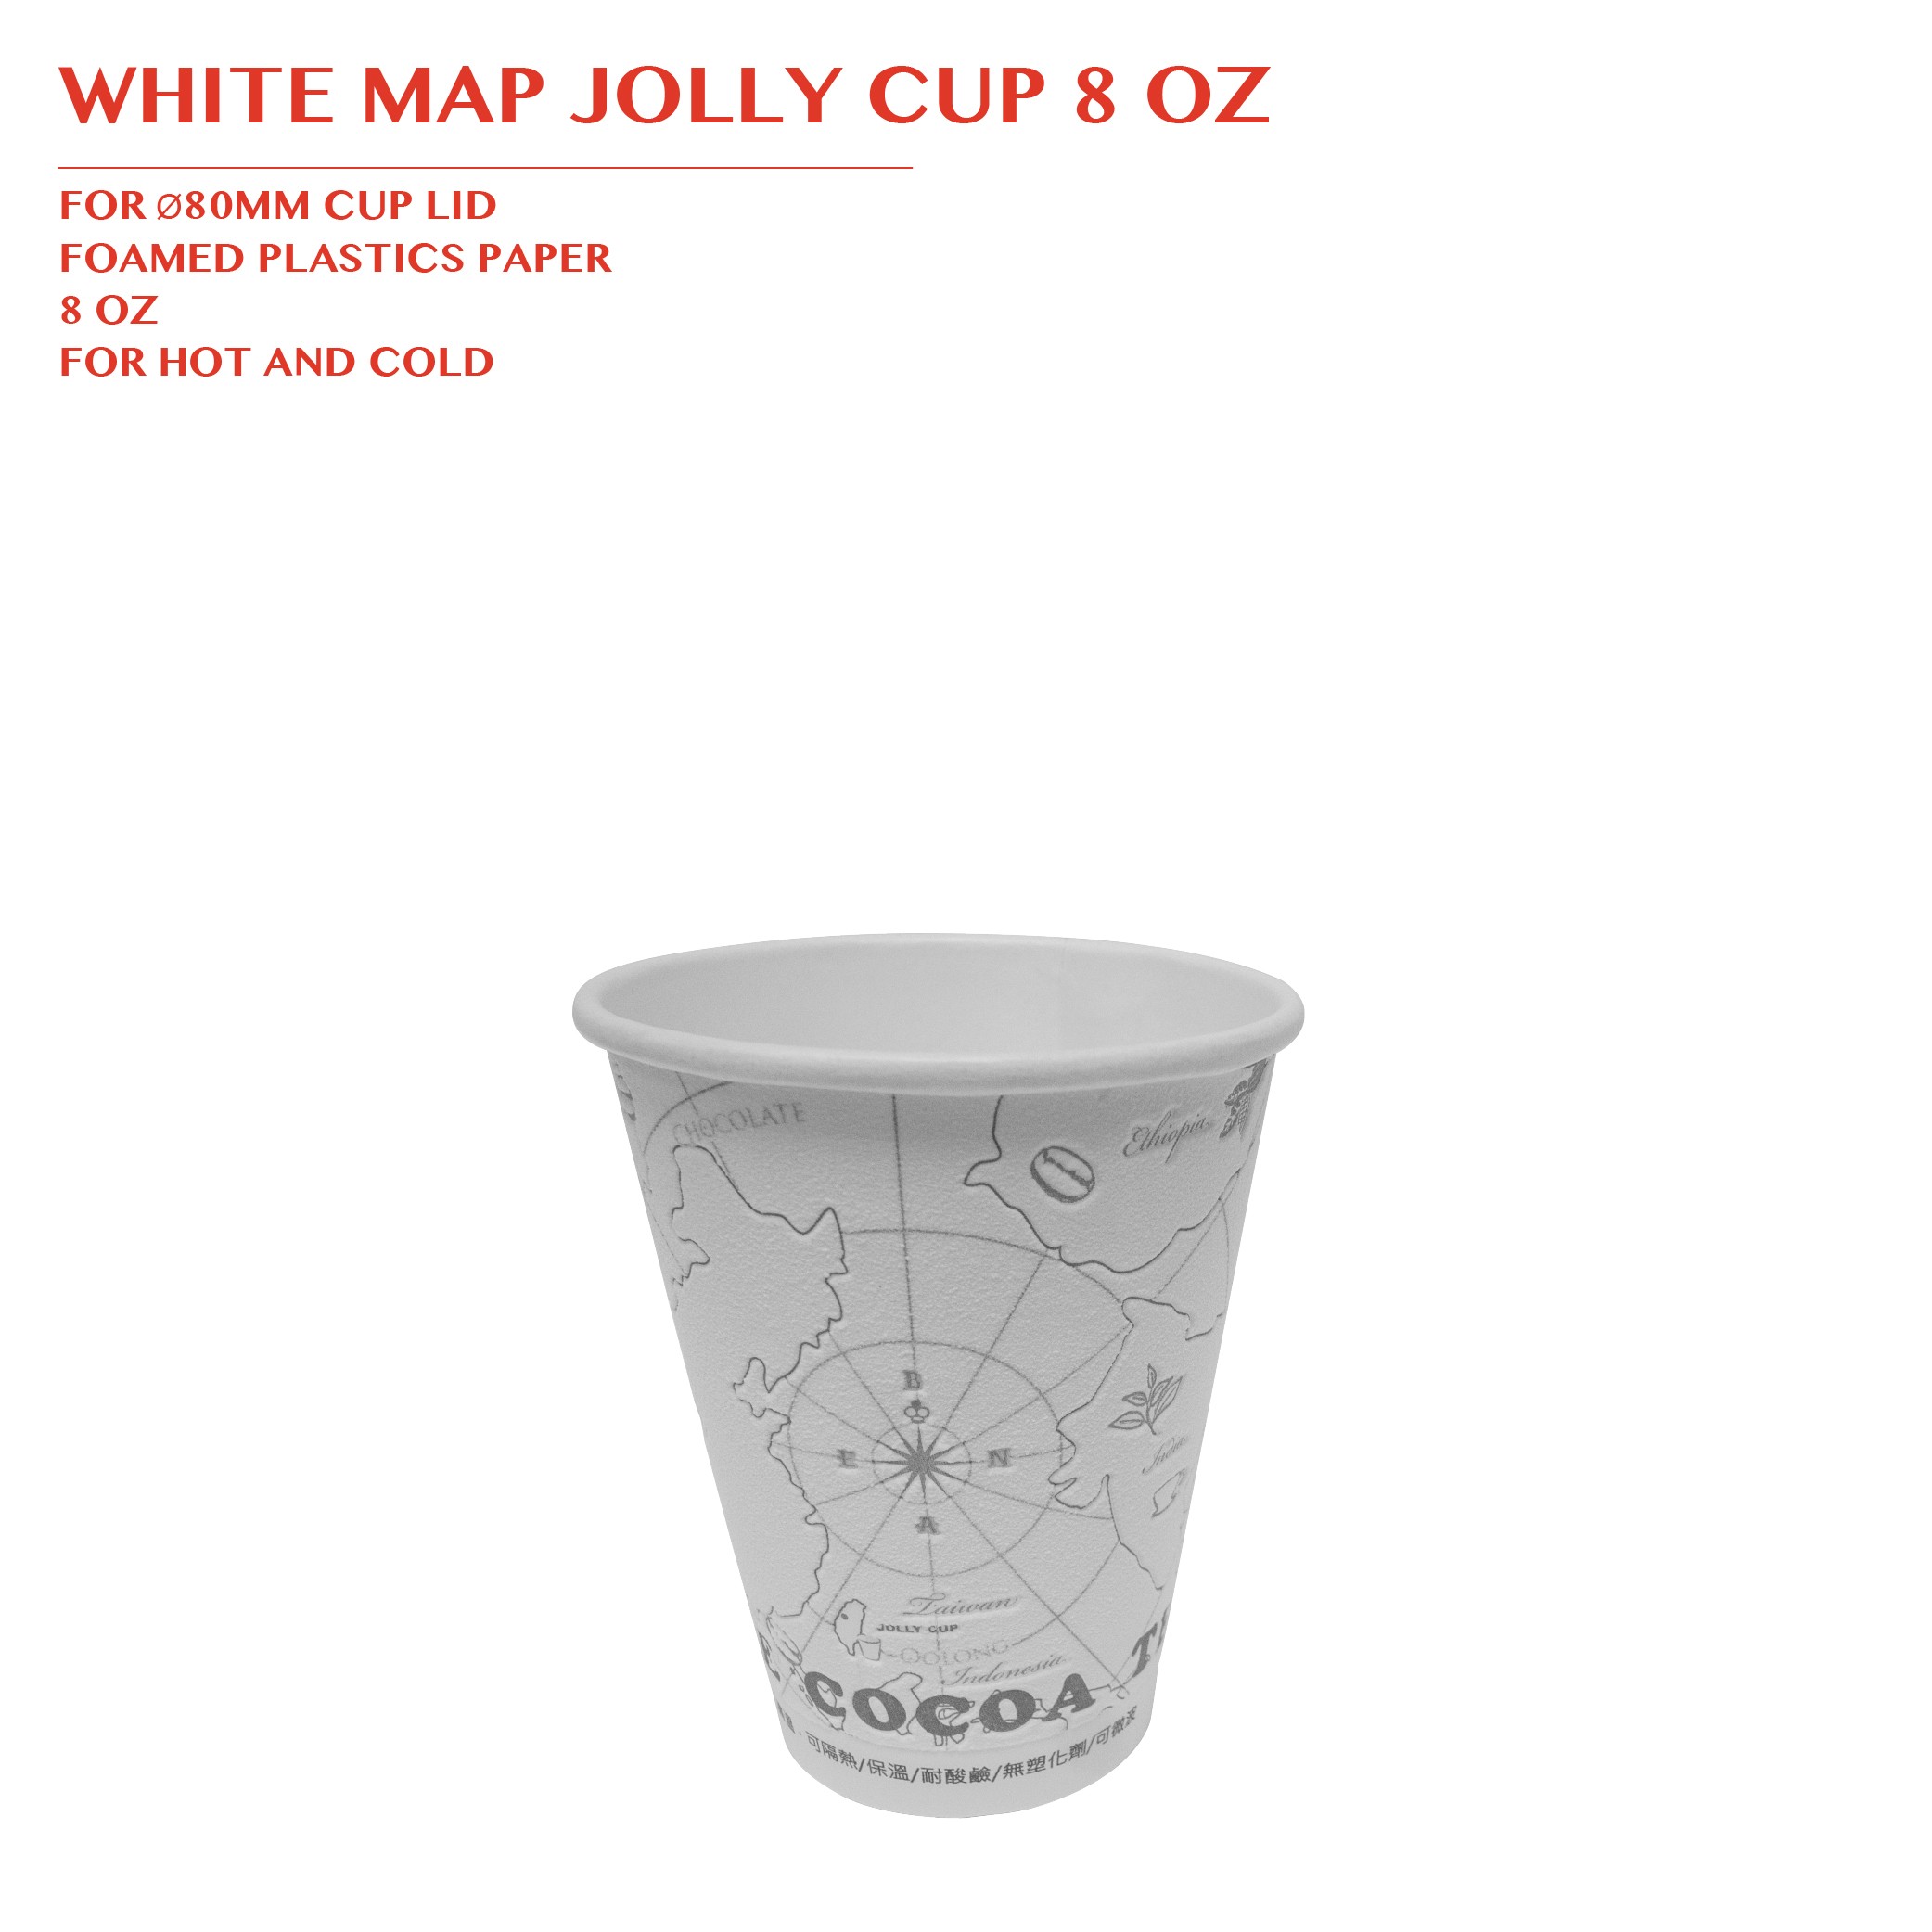 PRE-ORDER WHITE MAP JOLLY CUP 8 OZ PCS/CTN